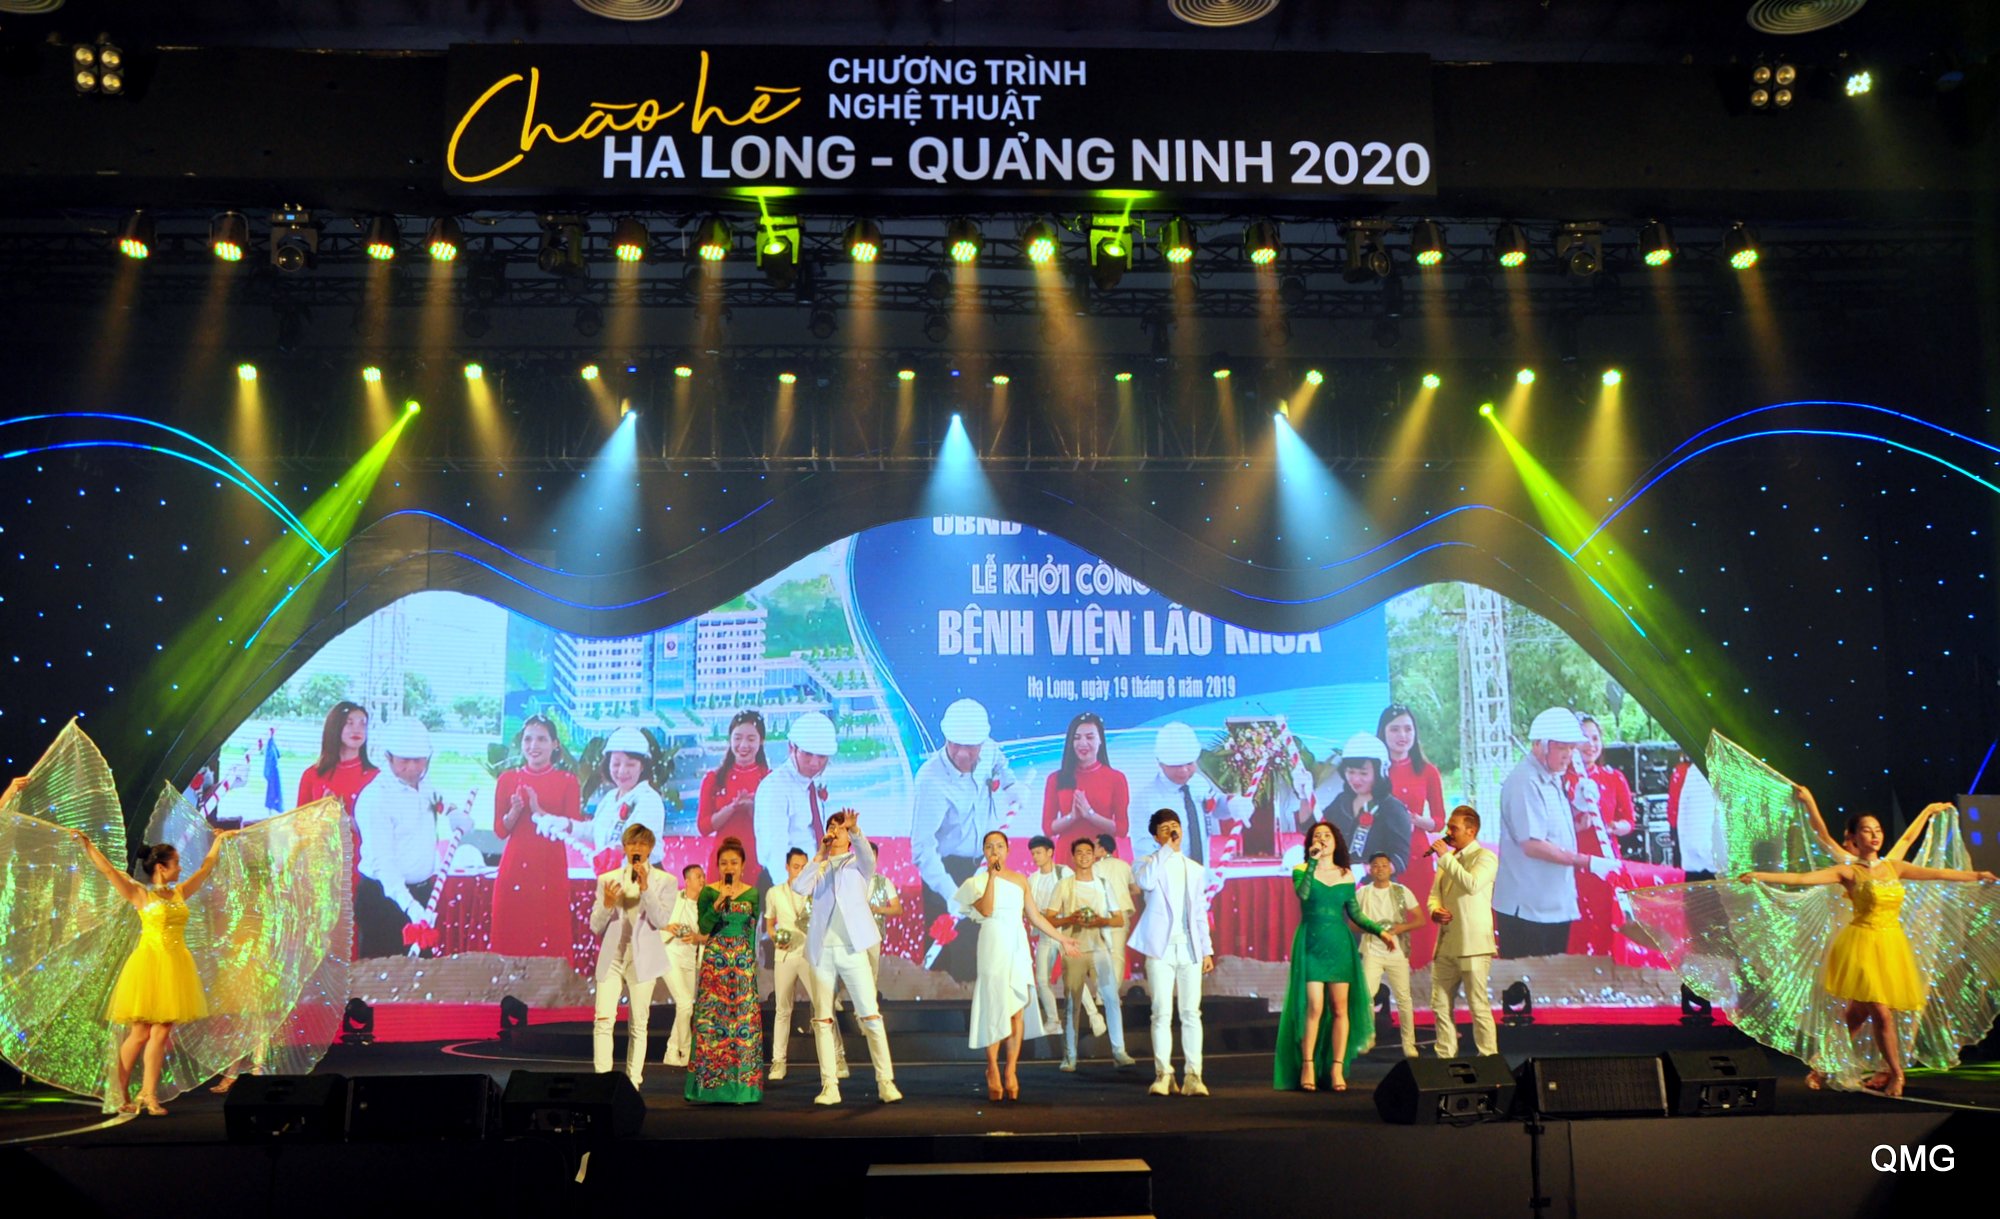 Chương trình nghệ thuật Chào hè Hạ Long - Quảng Ninh 2020 được dàn dựng công phu, hoành tráng, rực rỡ sắc màu. (Ảnh: Minh Hà)